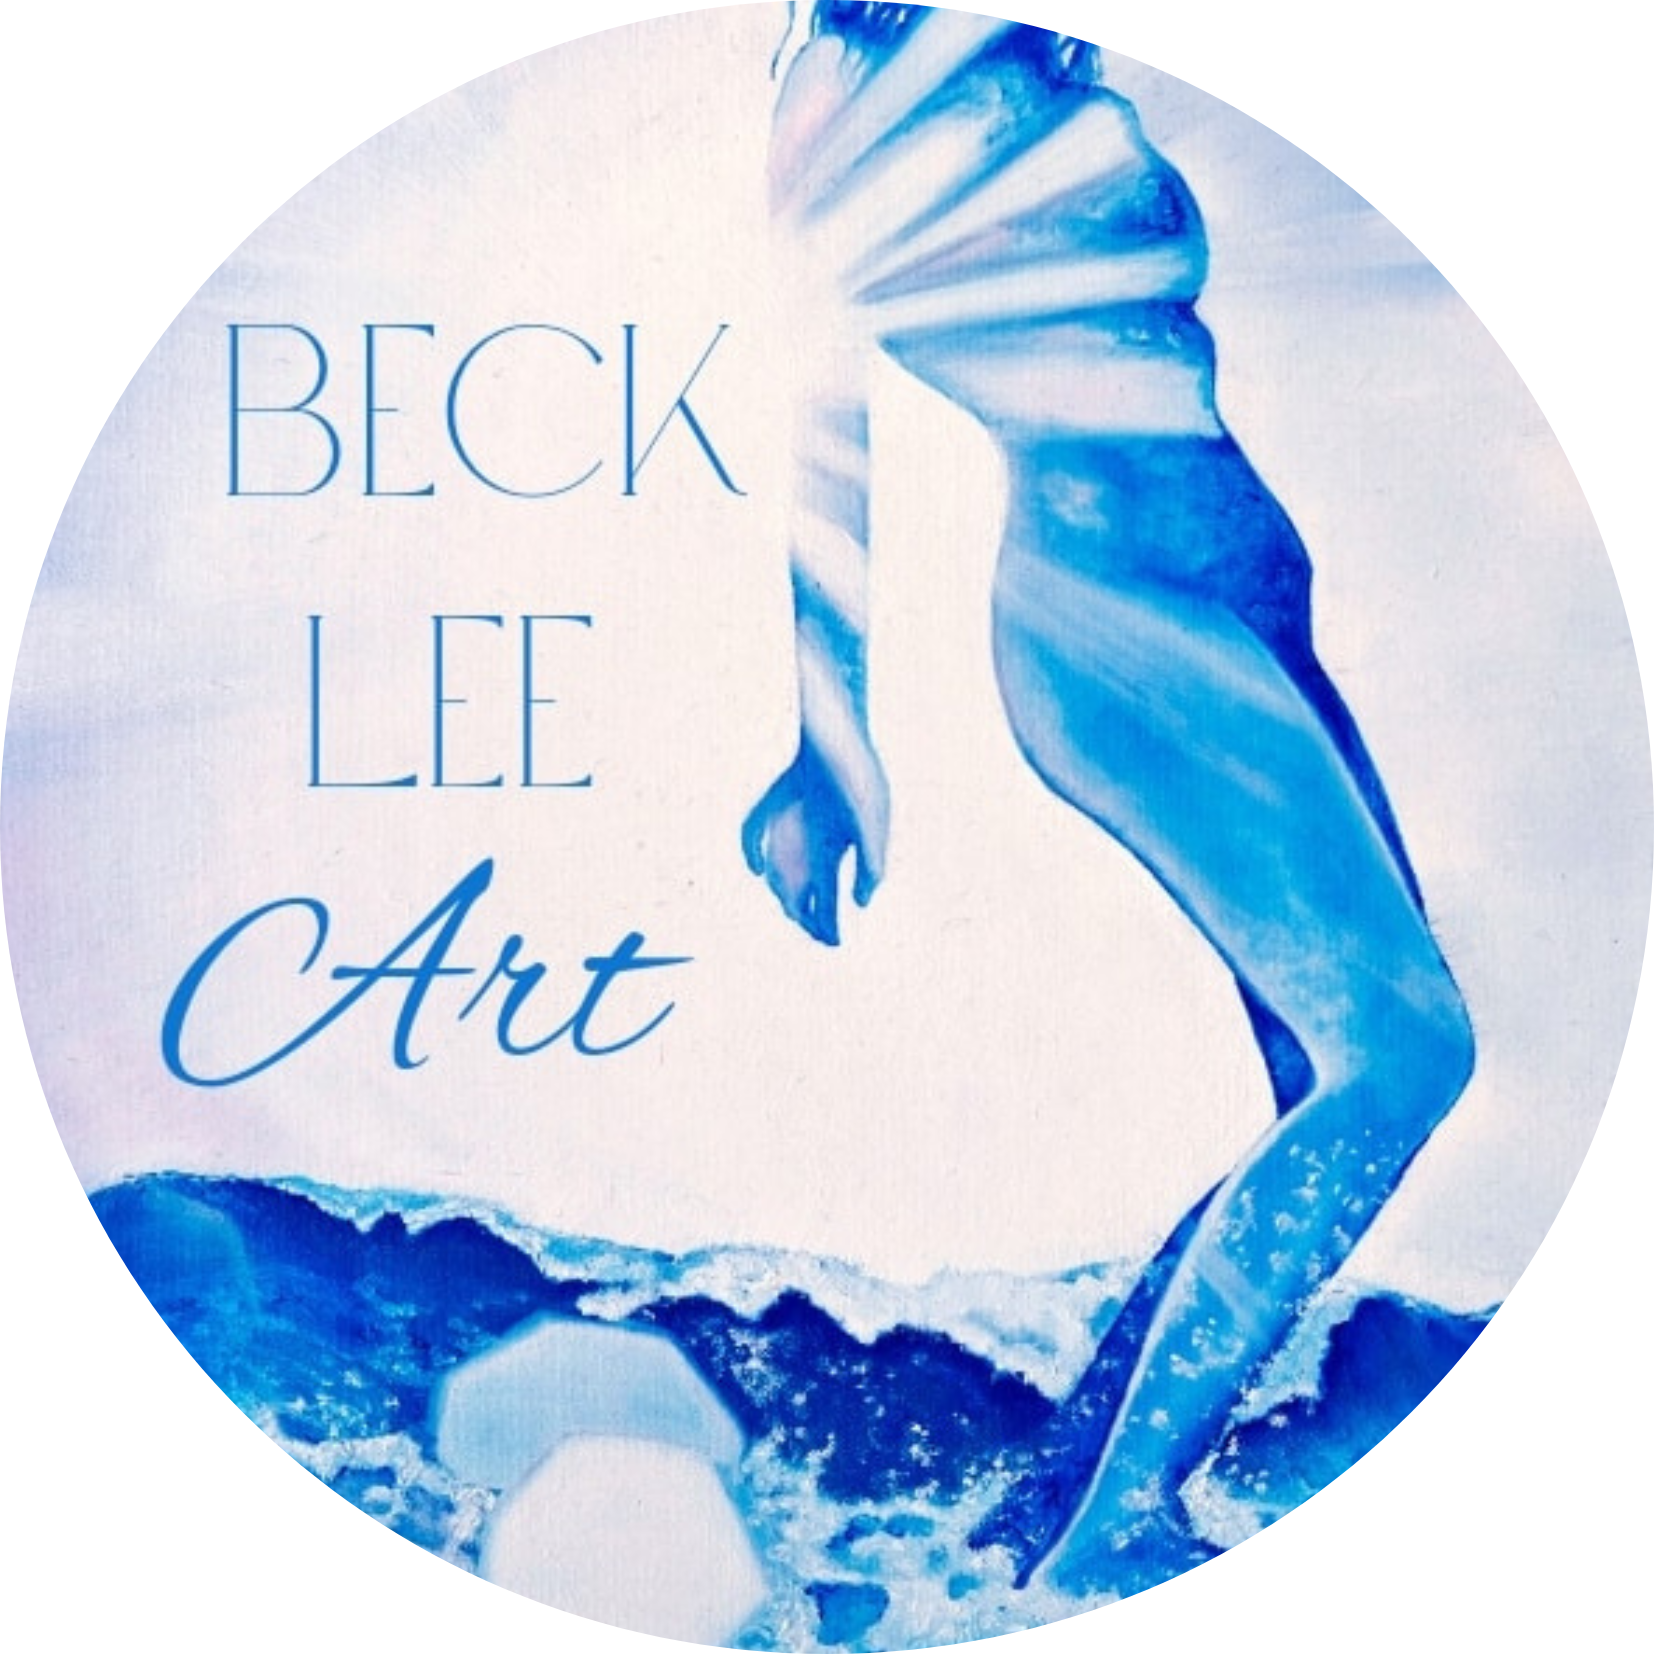 Beck Lee Art